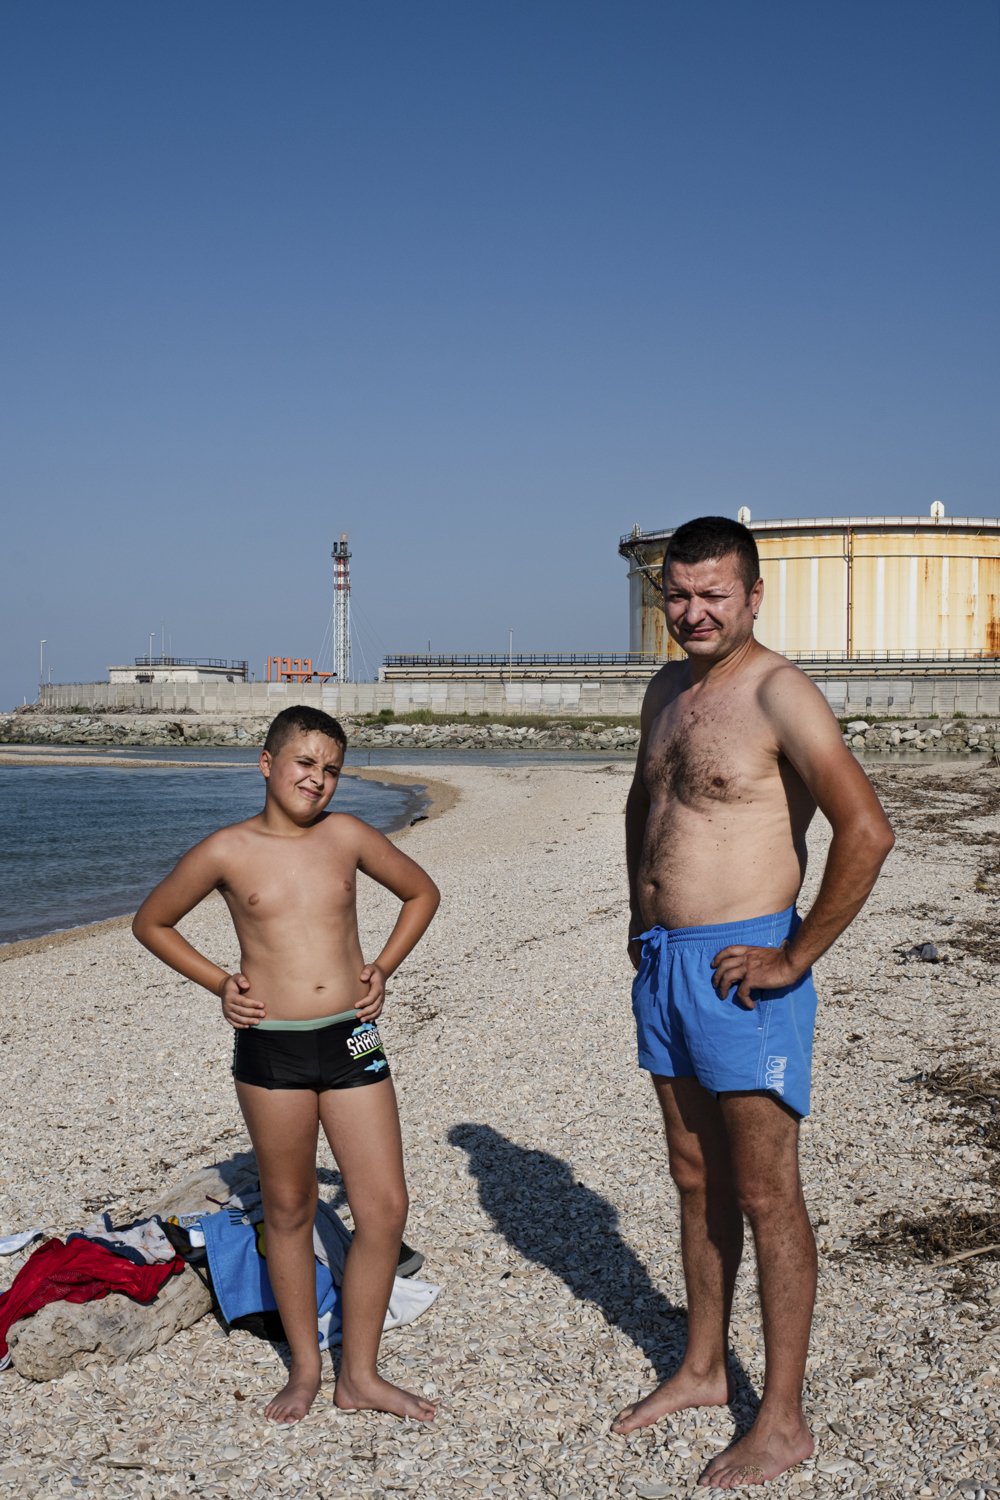  Mihael e suo figlio, sono di origine rumena e vivono a Jesi e frequentano spesso la spiaggia vicina alla raffineria Api. Falconara Marittima (Ancona), 2023. 